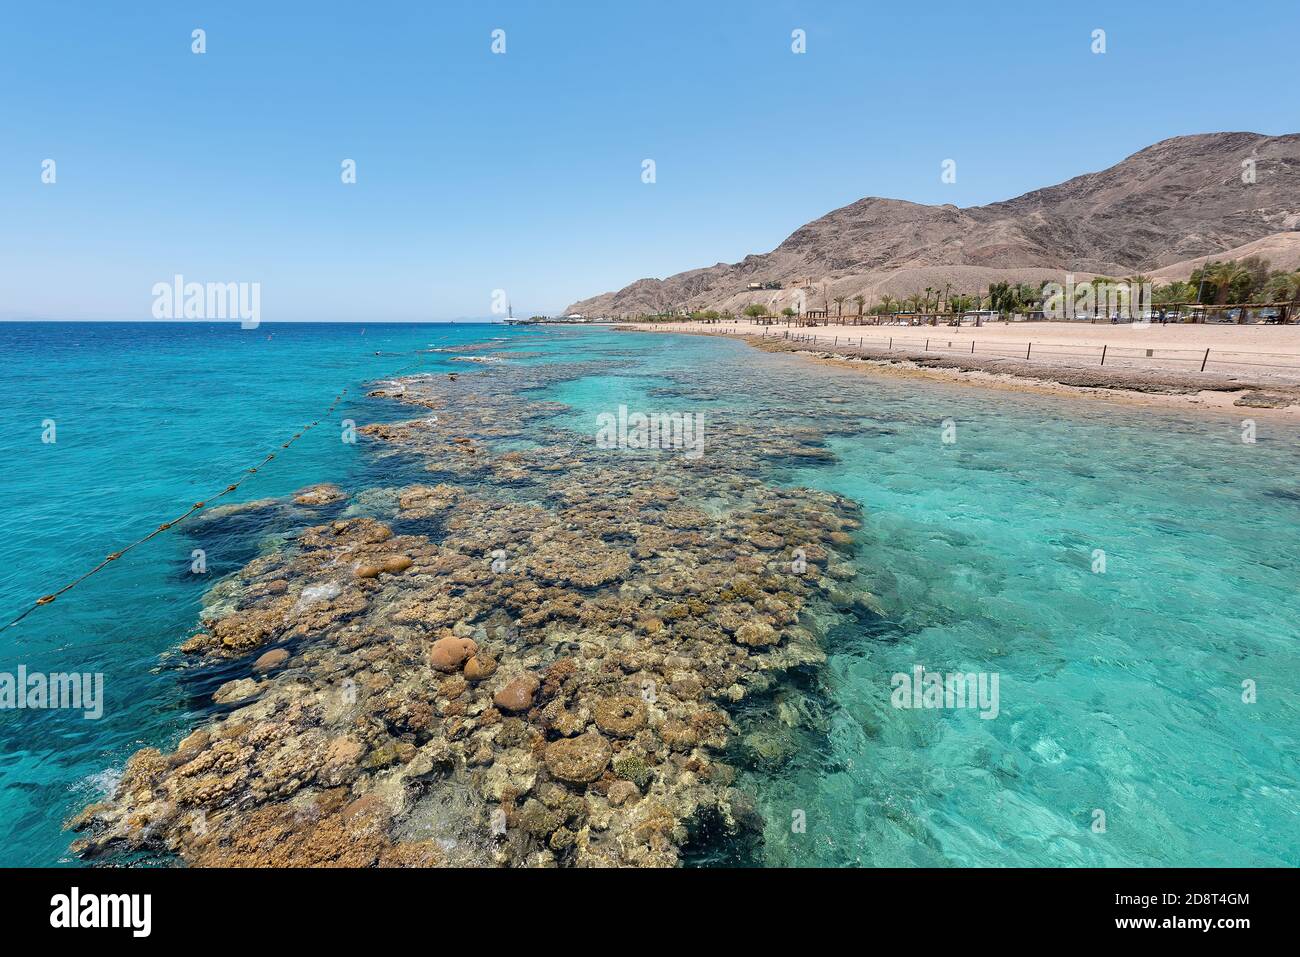 In der Nähe der ägyptischen Grenze gelegen, ist die Erhaltung der Korallenriffe der Hauptgrund für die Schaffung dieses Nationalparks. Stockfoto